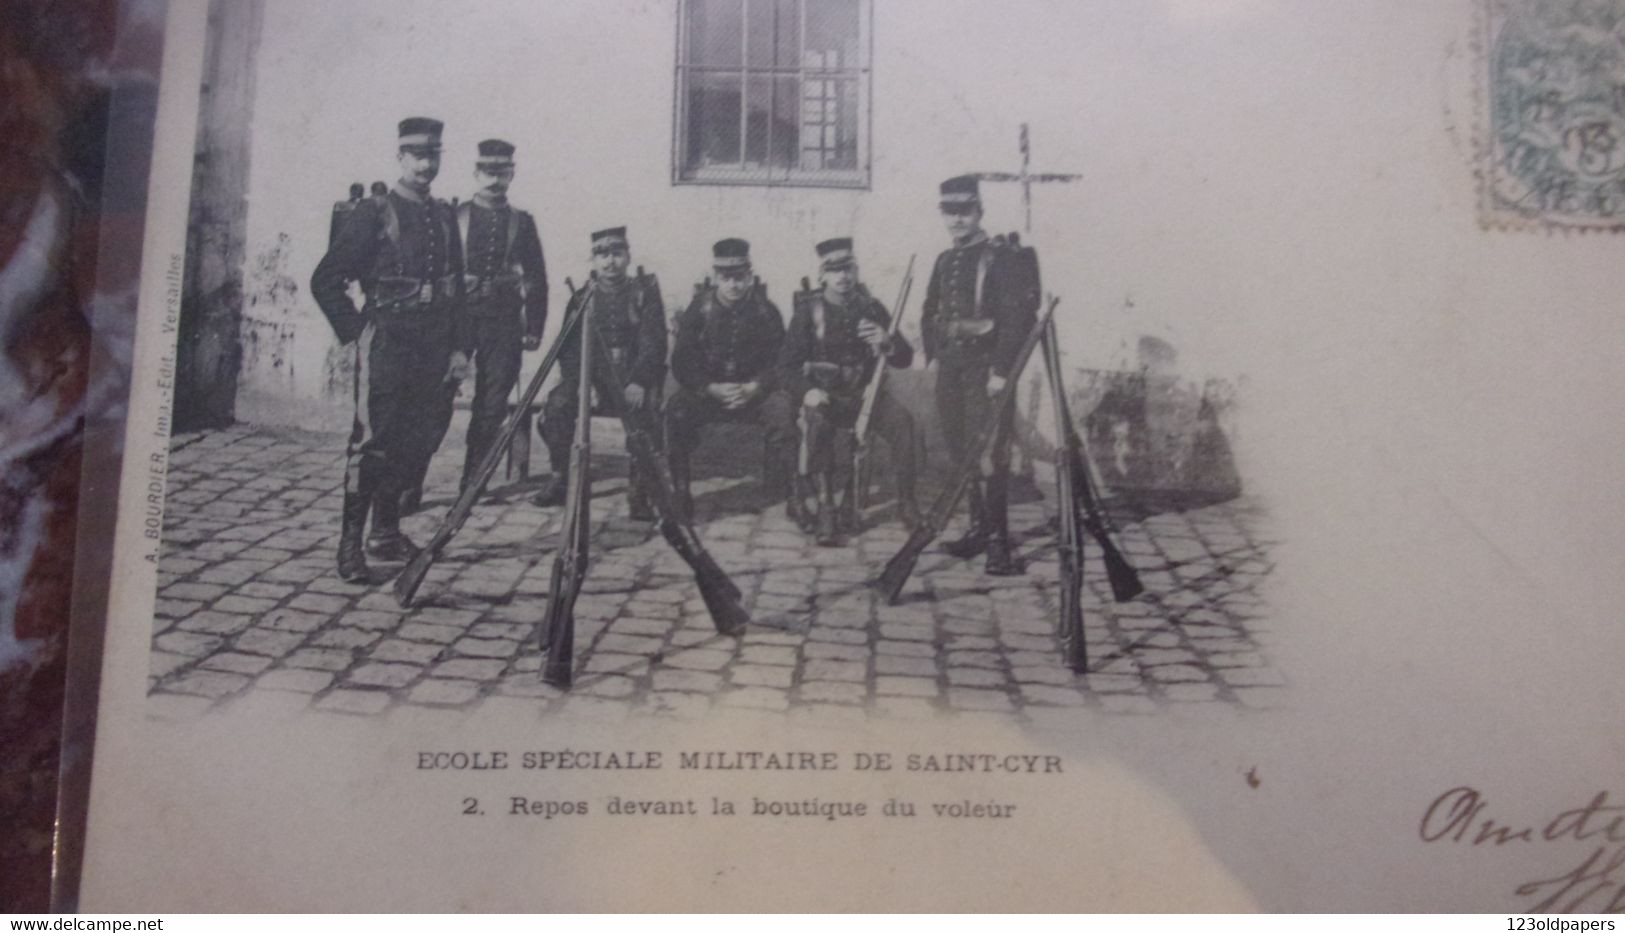 78 ECOLE SPECIALE MILITAIRE DE SAINT CYR 1903 2 REPOS DEVANT LA BOUTIQUE DU VOLEUR - St. Cyr L'Ecole